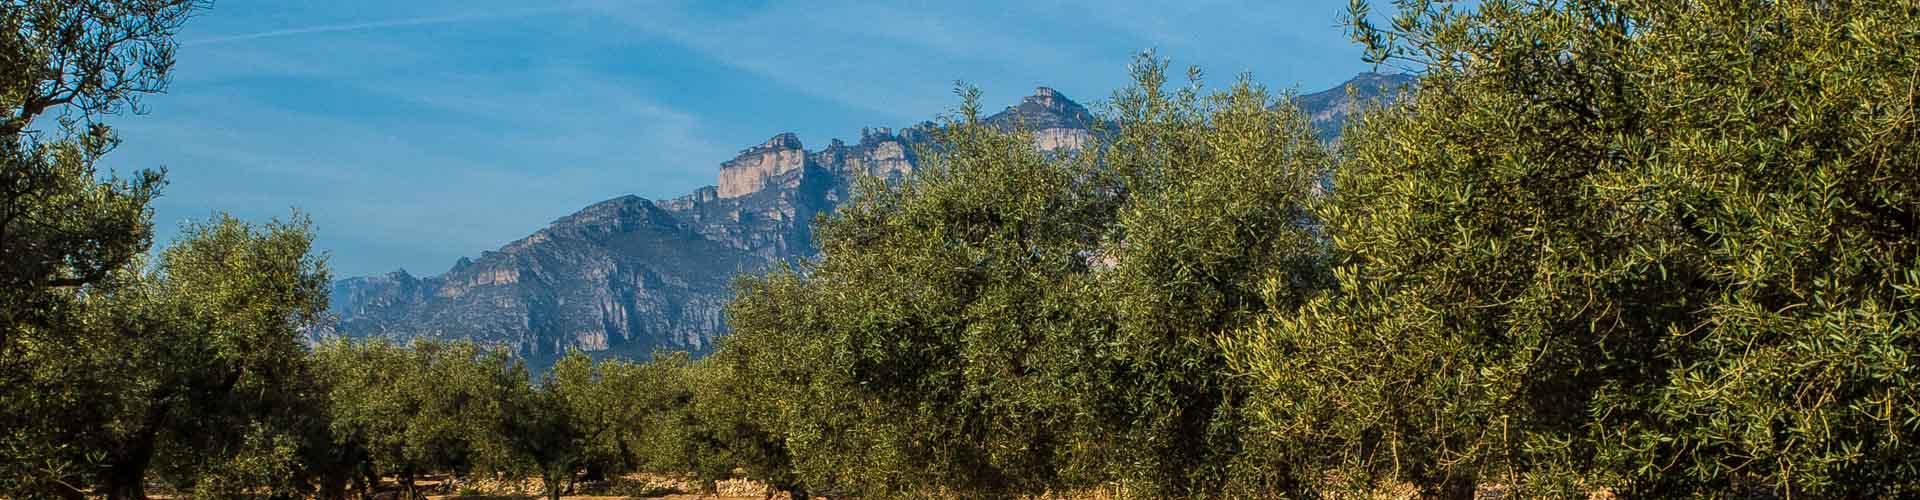 Camps d'oliveres a Roquetes